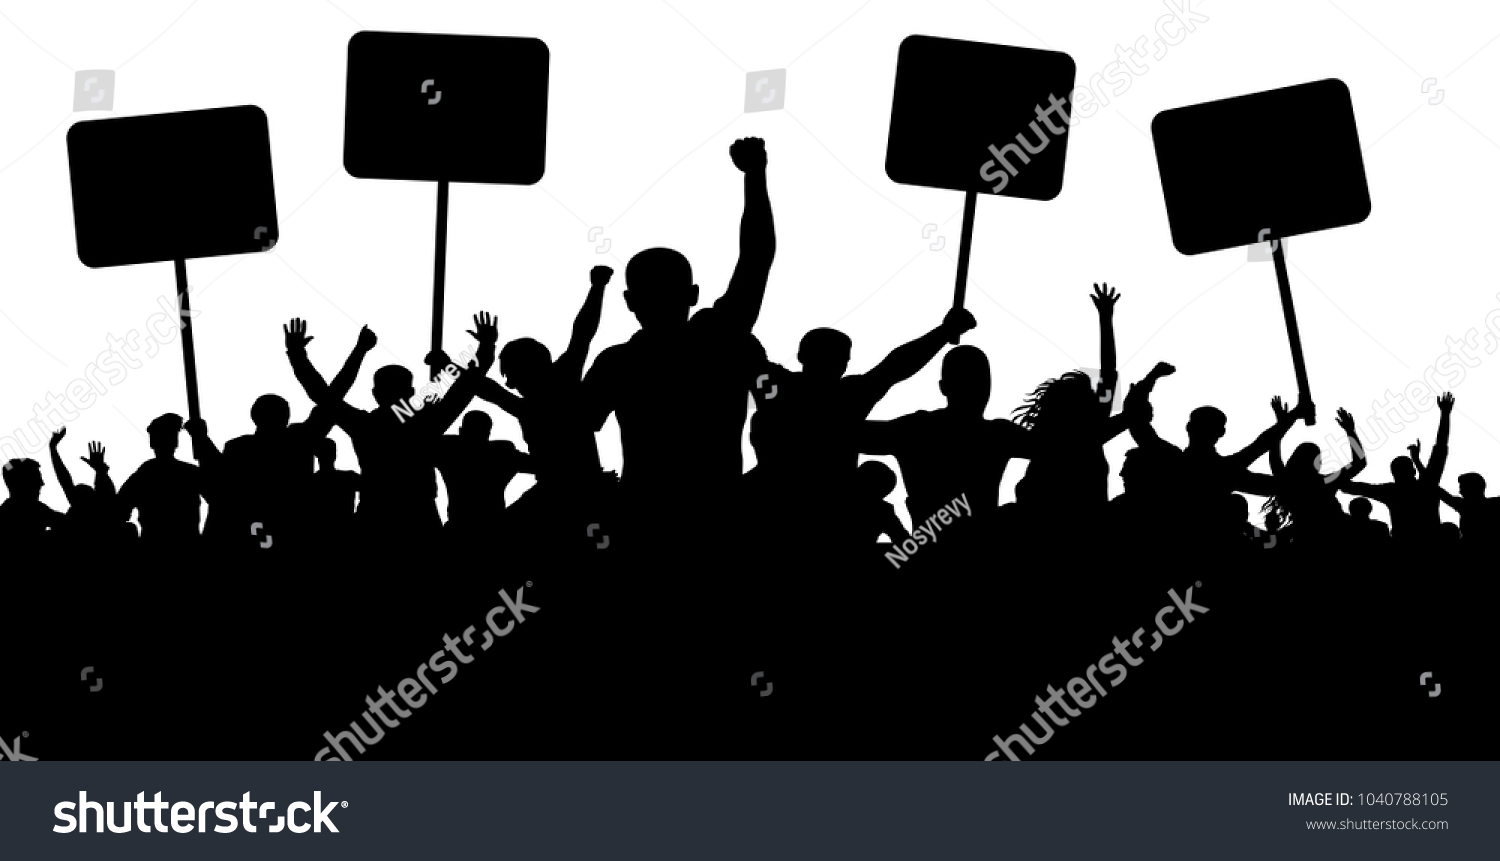 デモ ストライキ 現状 抗議 革命 シルエット背景のベクター画像 スポーツ モブ ファン 旗やバナーを持つ人々の群れ のベクター画像素材 ロイヤリティフリー 1040788105